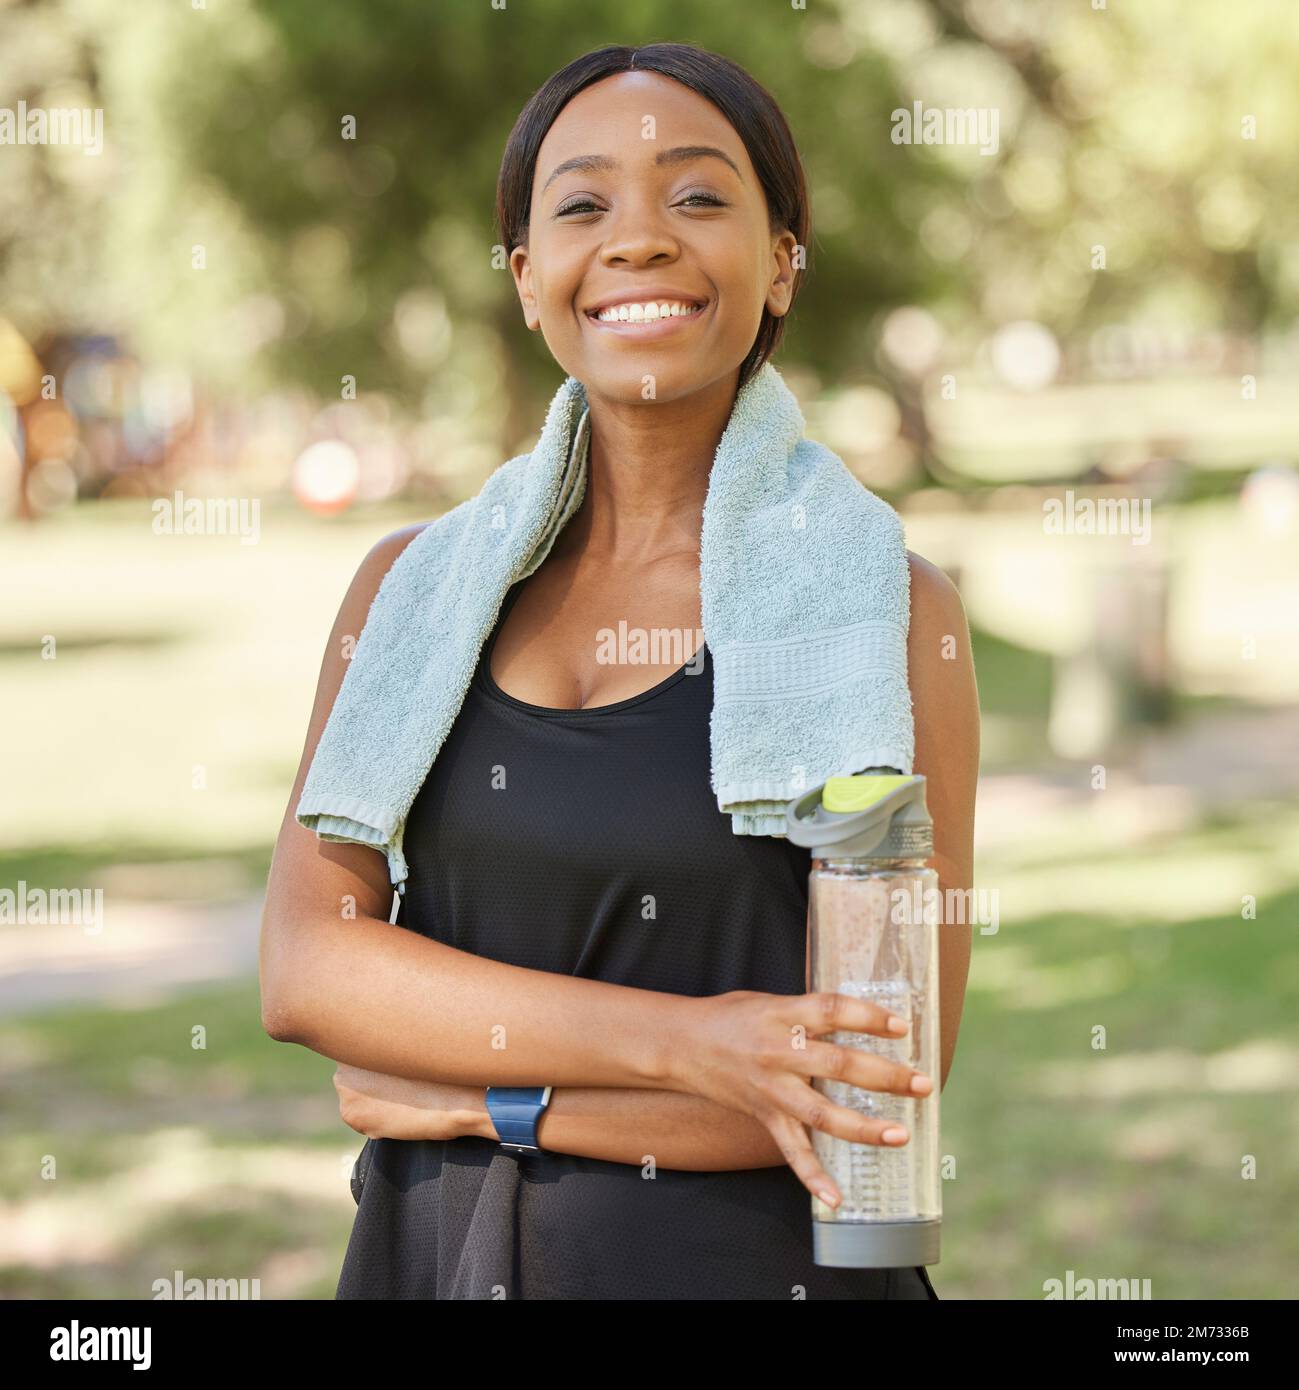 Ritratto di donna nera in parco con acqua e sorriso in natura per la salute, obiettivi di fitness e mentalità sana. Esercizio fisico, zen e yoga, faccia felice Foto Stock